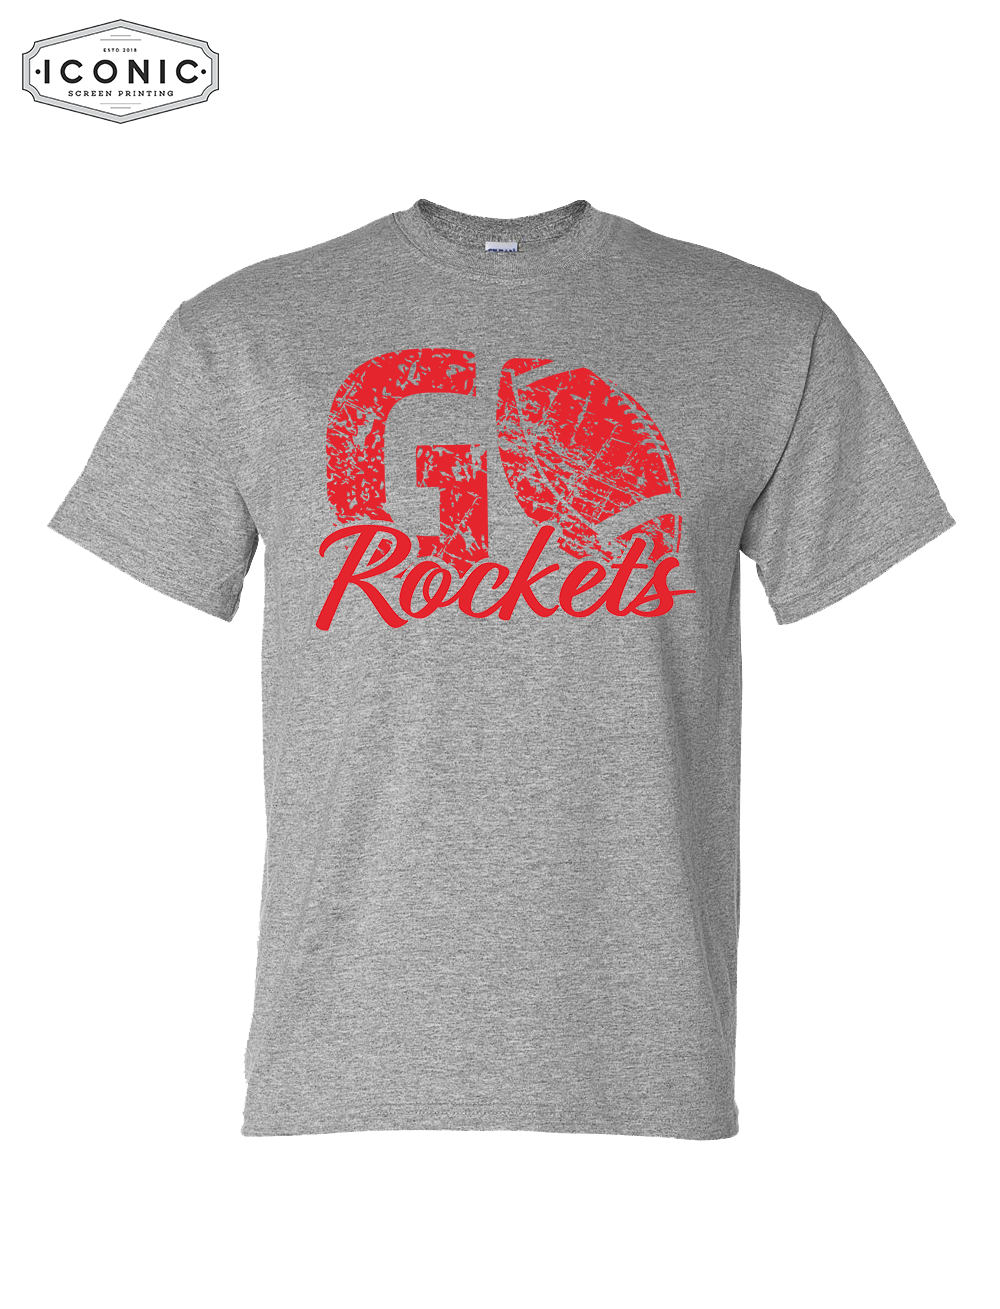 Rockets Football - DryBlend T-shirt